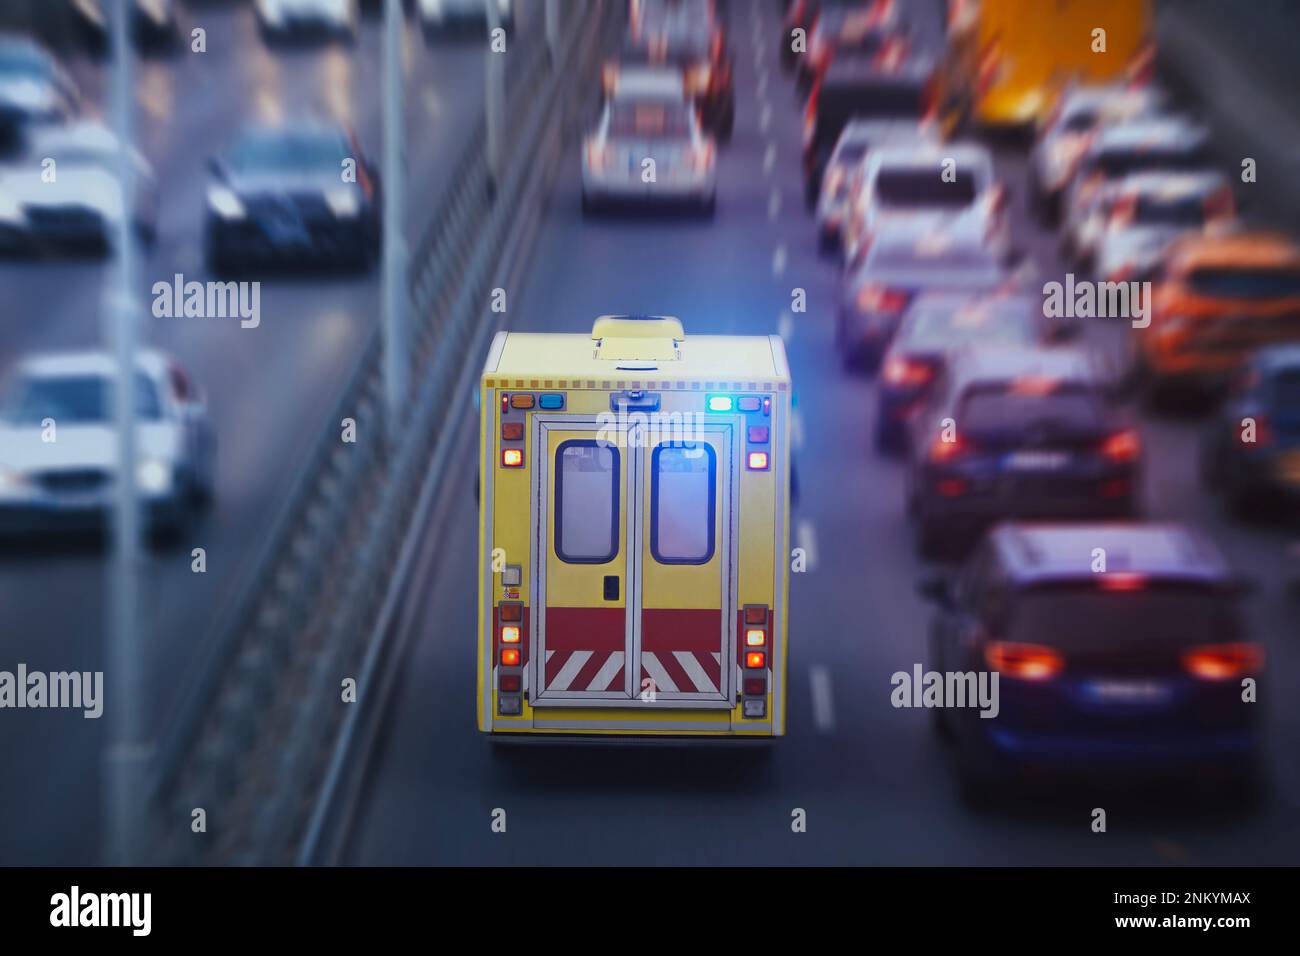 Ambulanza auto di servizio medico di emergenza su strada urbana. Temi di salvataggio, urgenza e assistenza sanitaria. Foto Stock